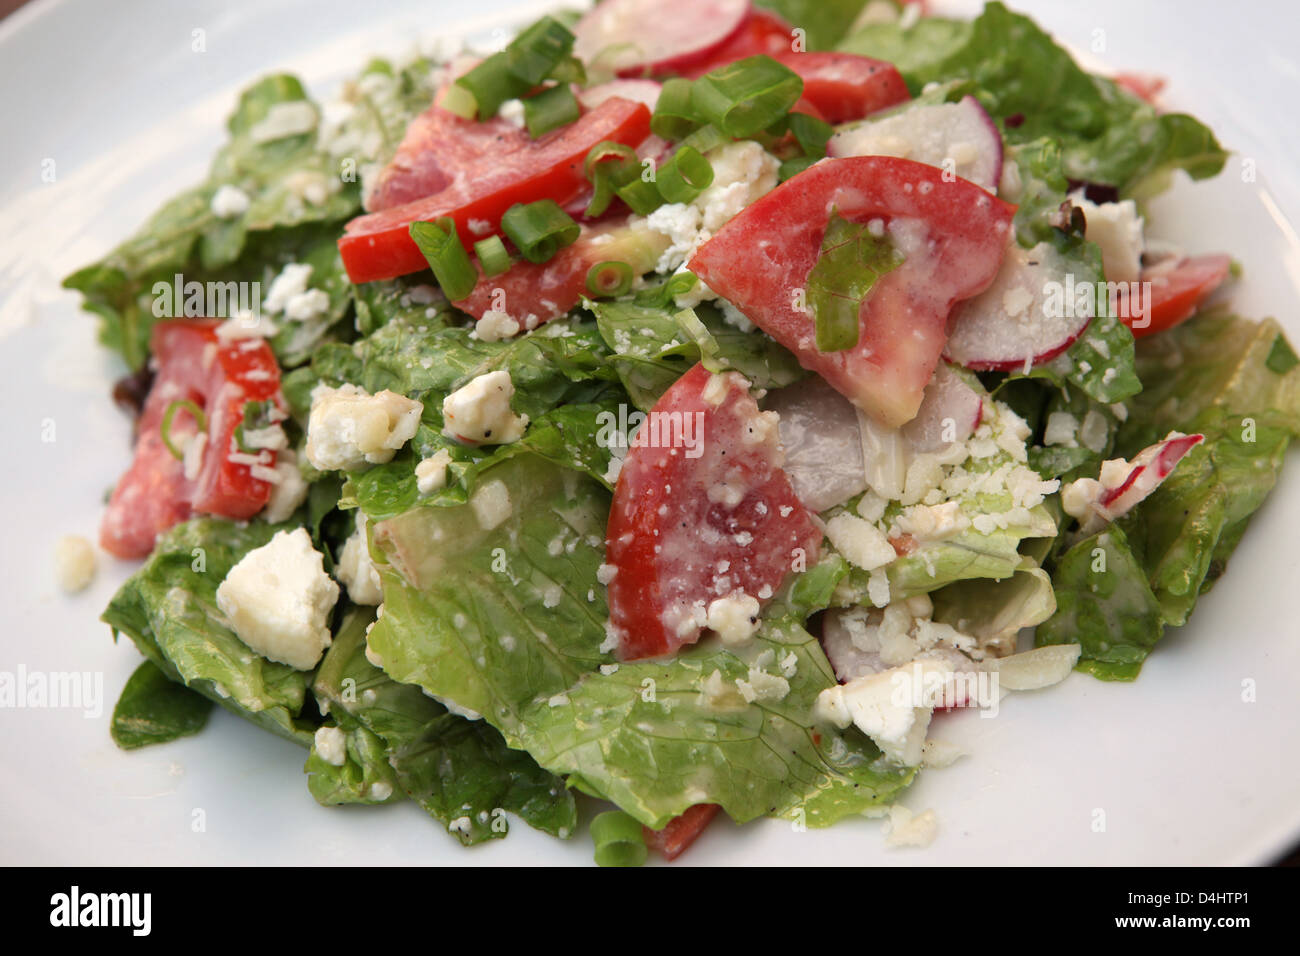 Verde con insalata di lattuga, rocket (rucola) pomodori e formaggio Foto Stock